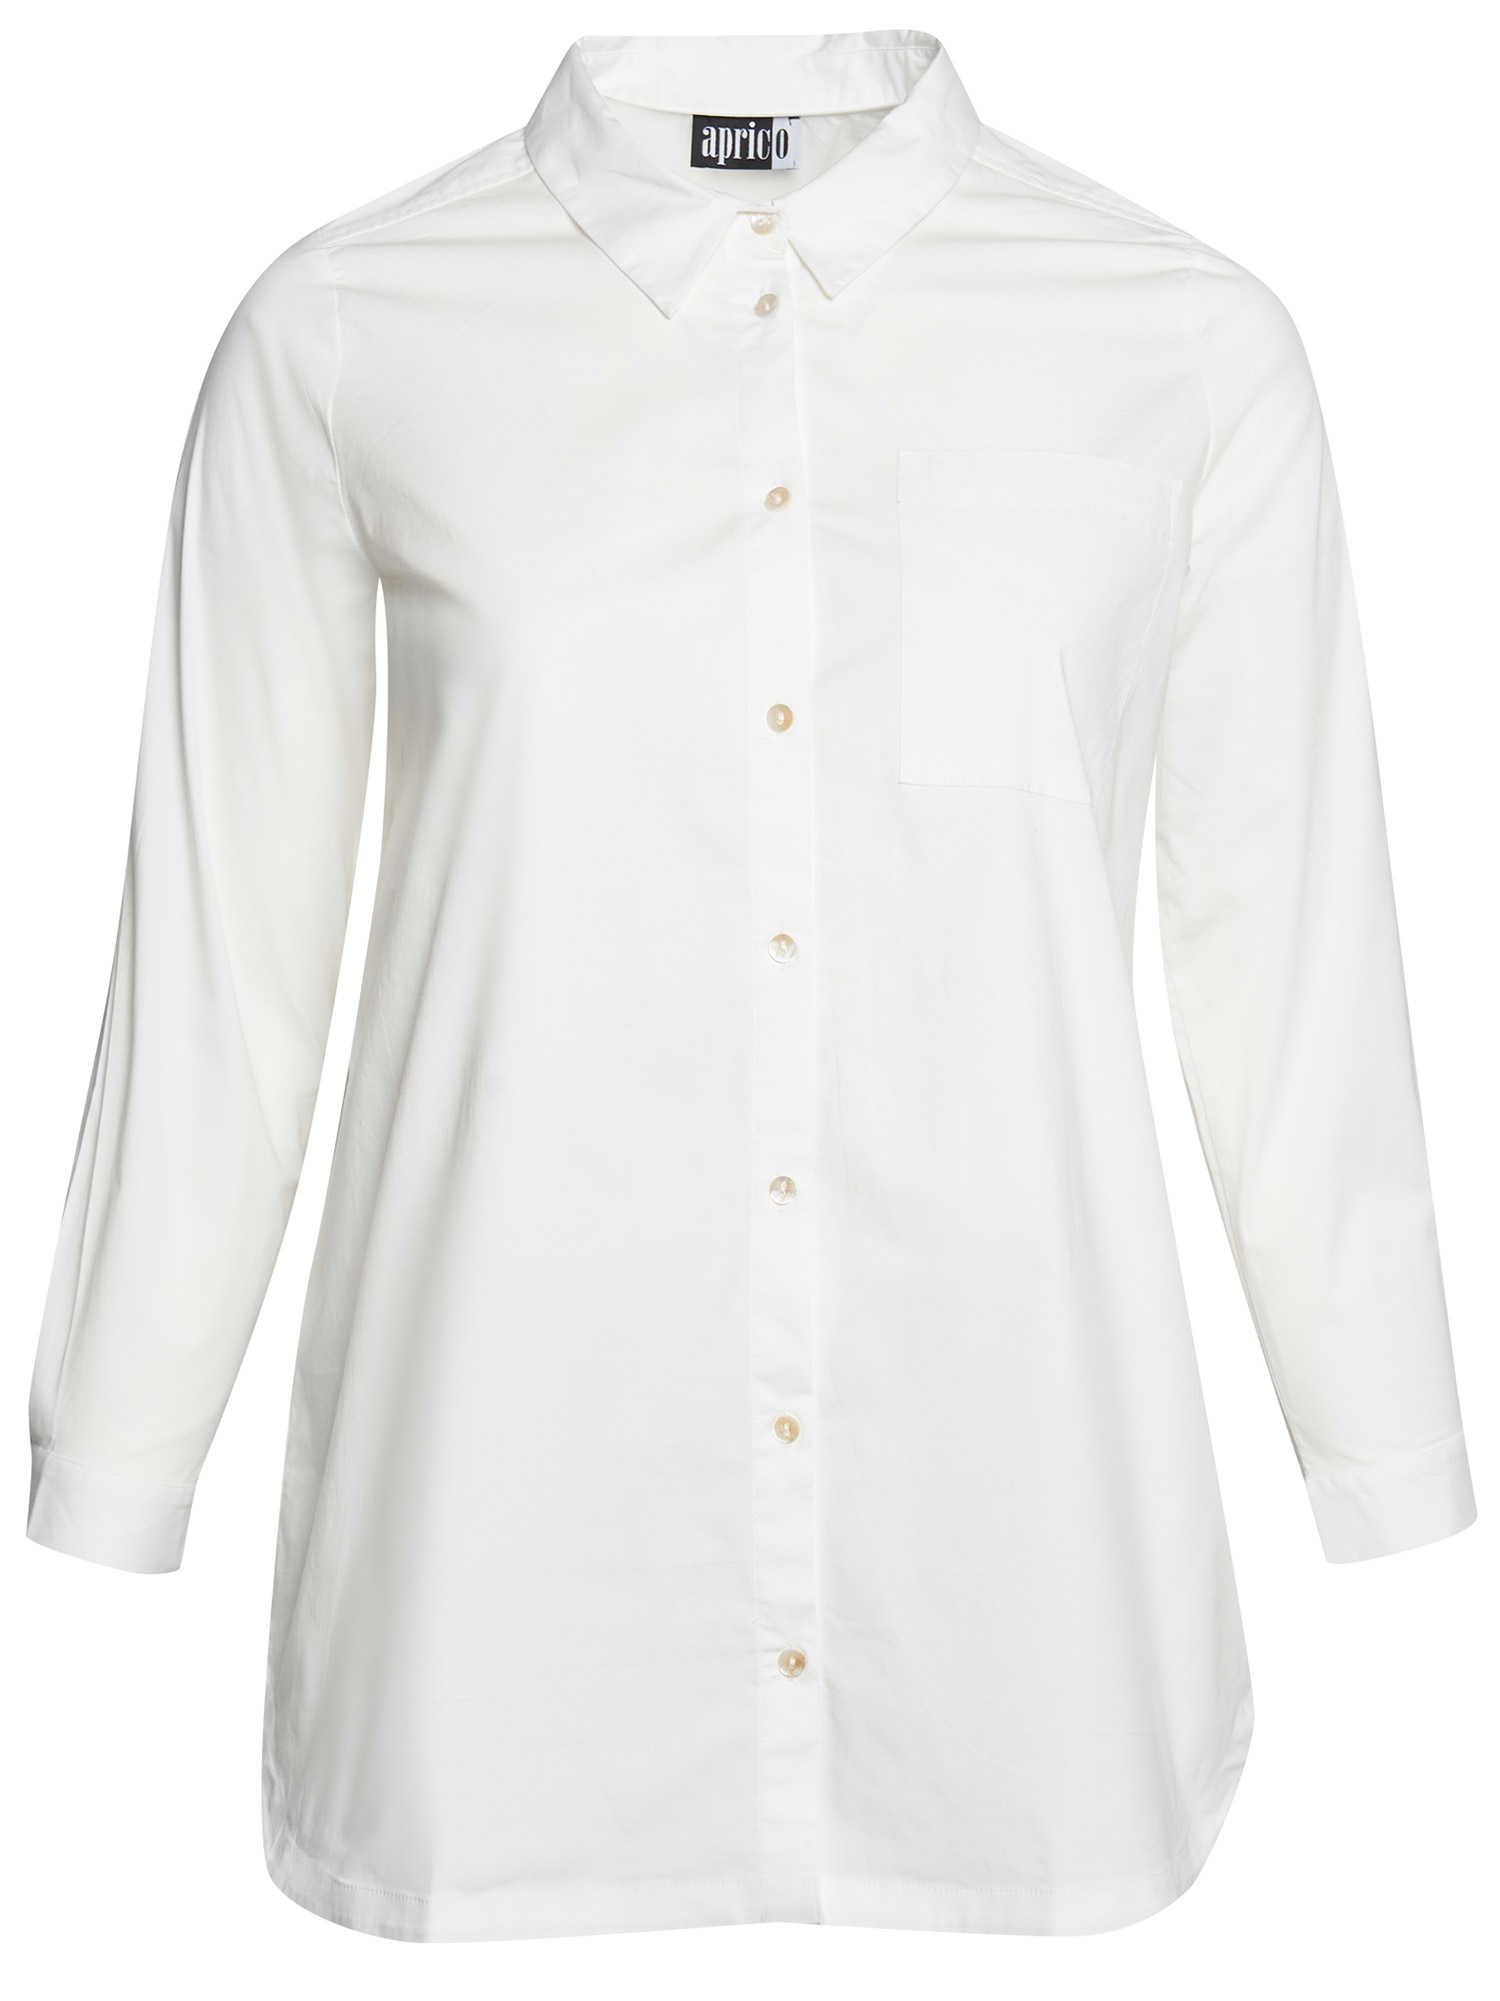 Virginia - Hvit bomulls skjorte med stretch fra Aprico